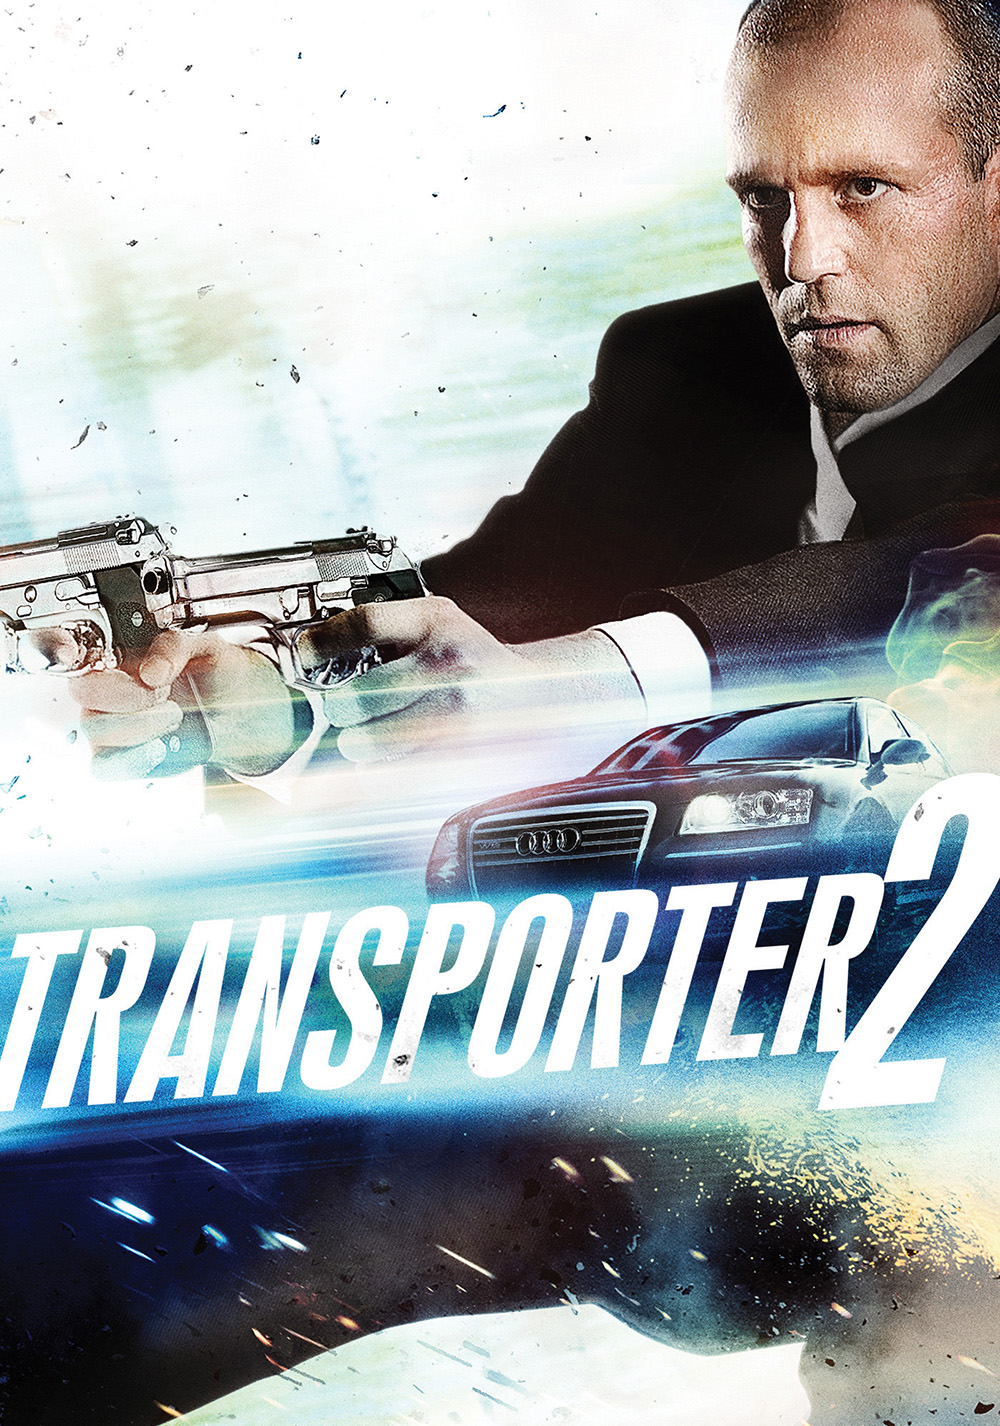 หนังน่าดู : The Transporter 2 ทรานสปอร์ตเตอร์ 2 ภารกิจฮึด เฆี่ยนนรก